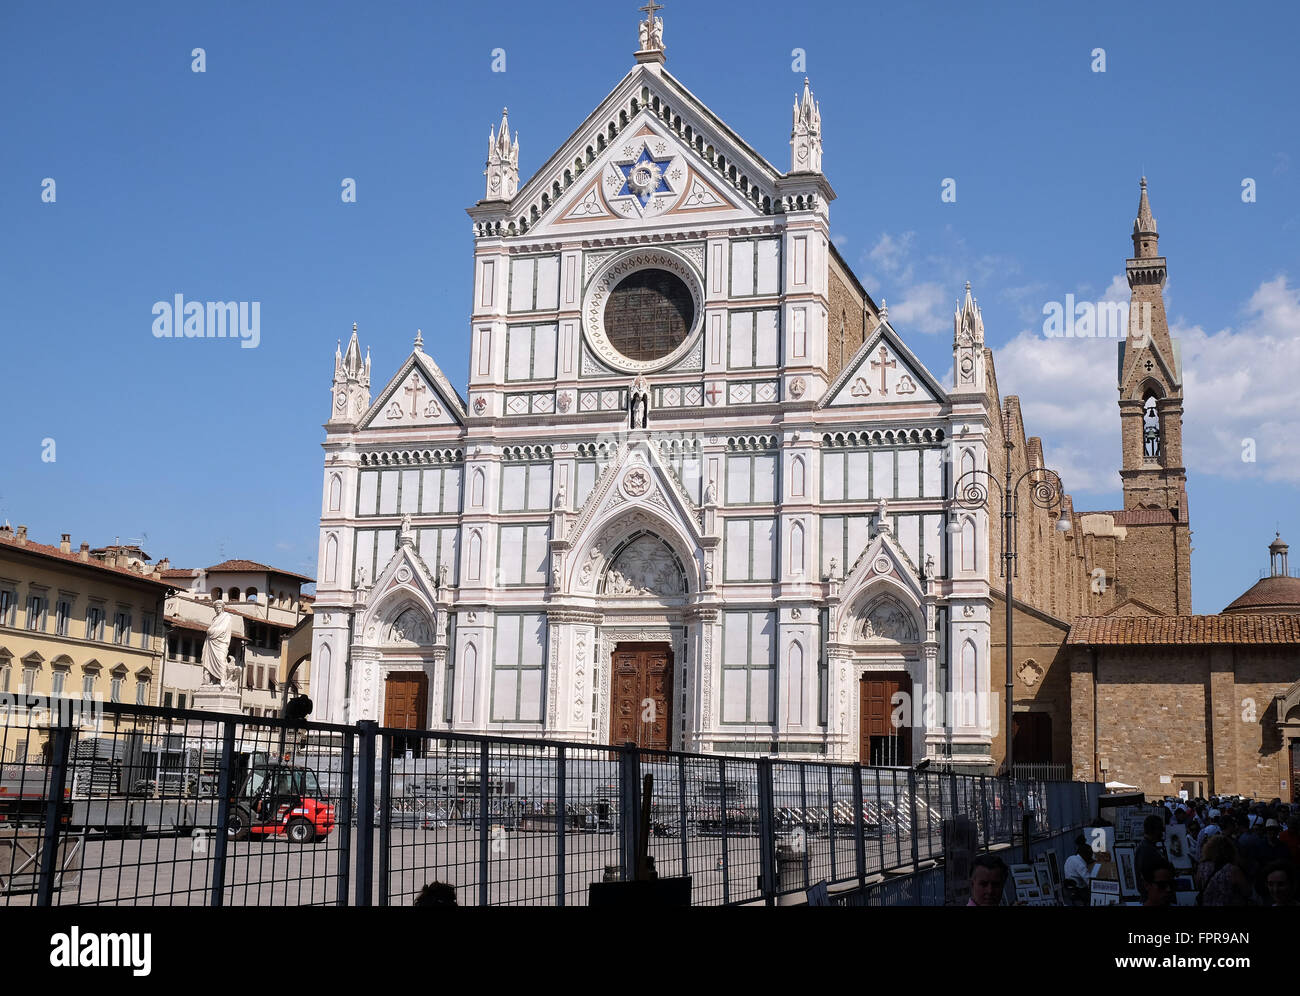 La basilique de Santa Croce (Basilique de la Sainte Croix) - La célèbre église franciscaine à Florence, Italie Banque D'Images